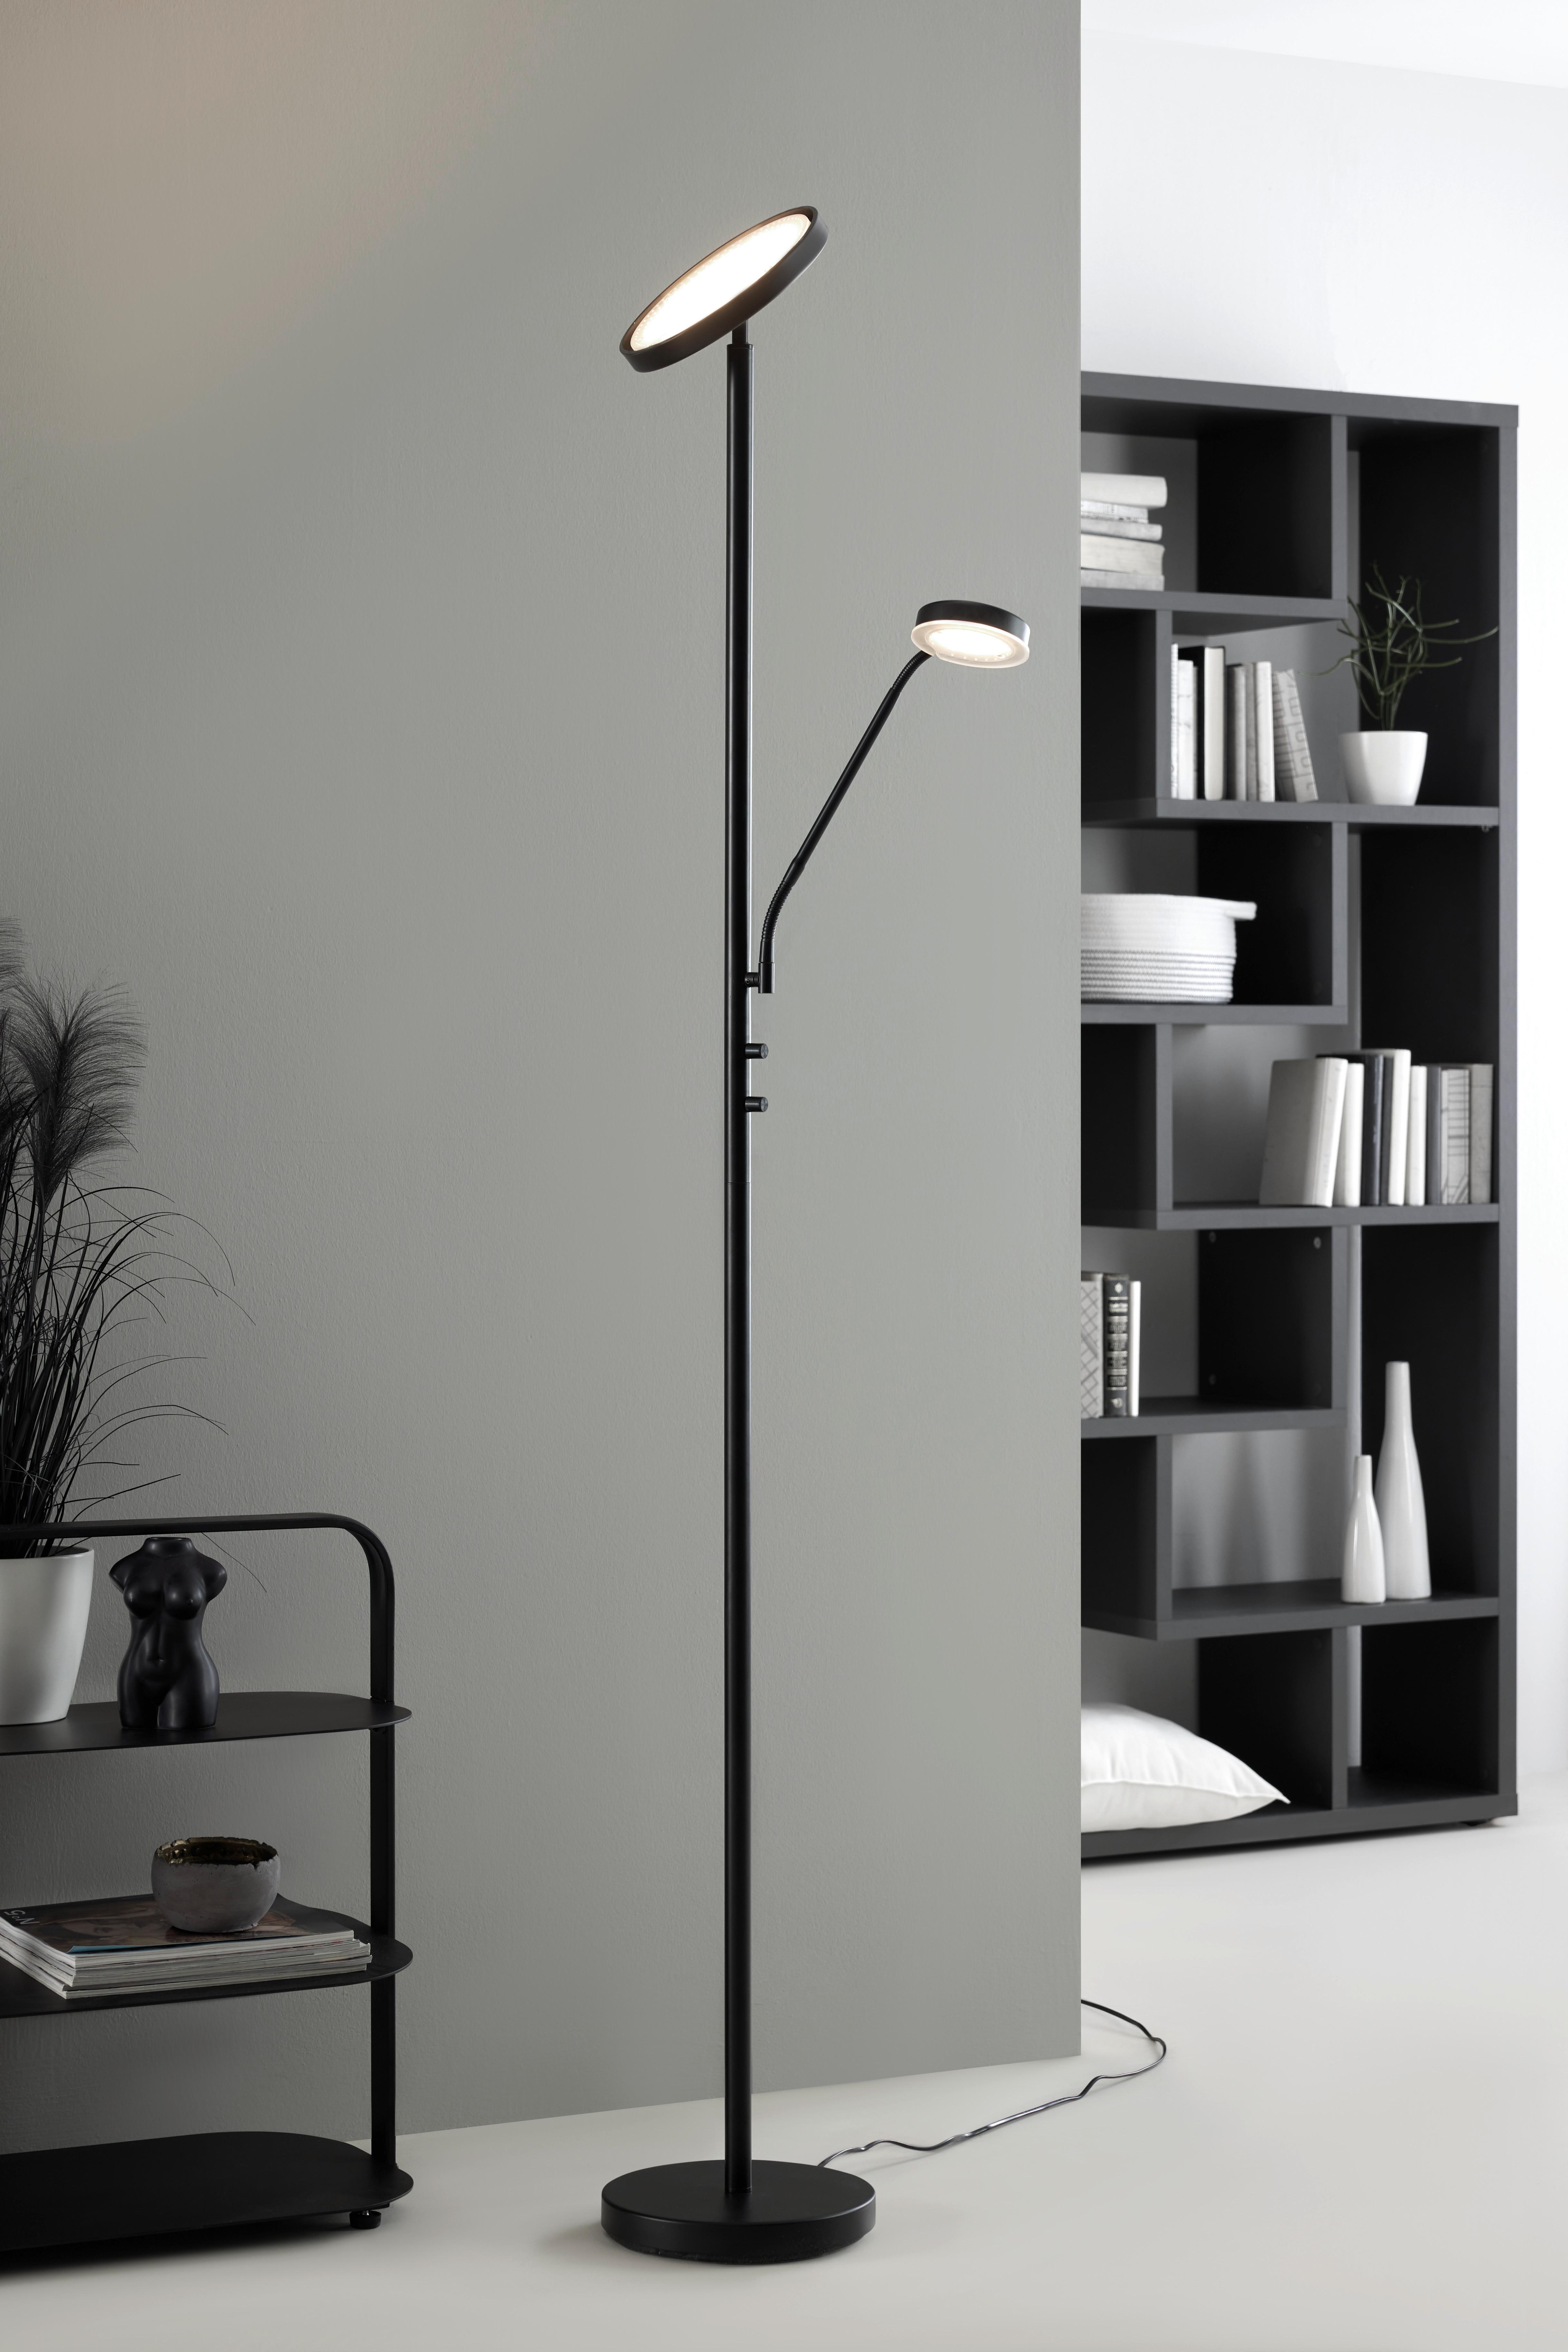 Stojacia Led Lampa Minn, 26/180cm - čierna/biela, Moderný, kov/plast (26/180cm) - Modern Living